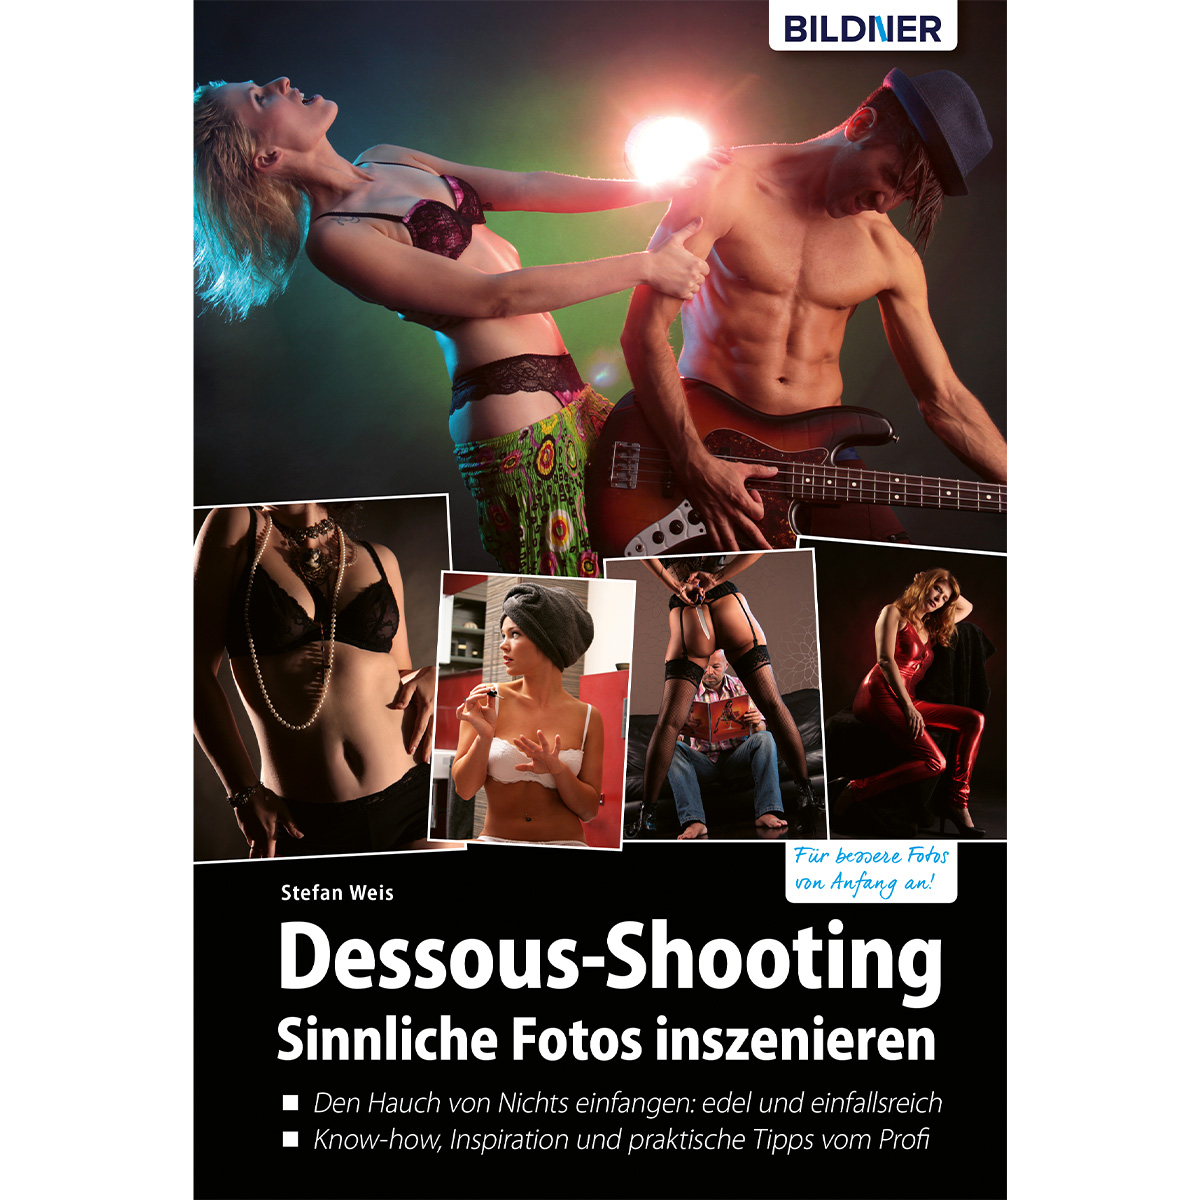 Sinnliche Fotos Dessous-Shooting - inszenieren